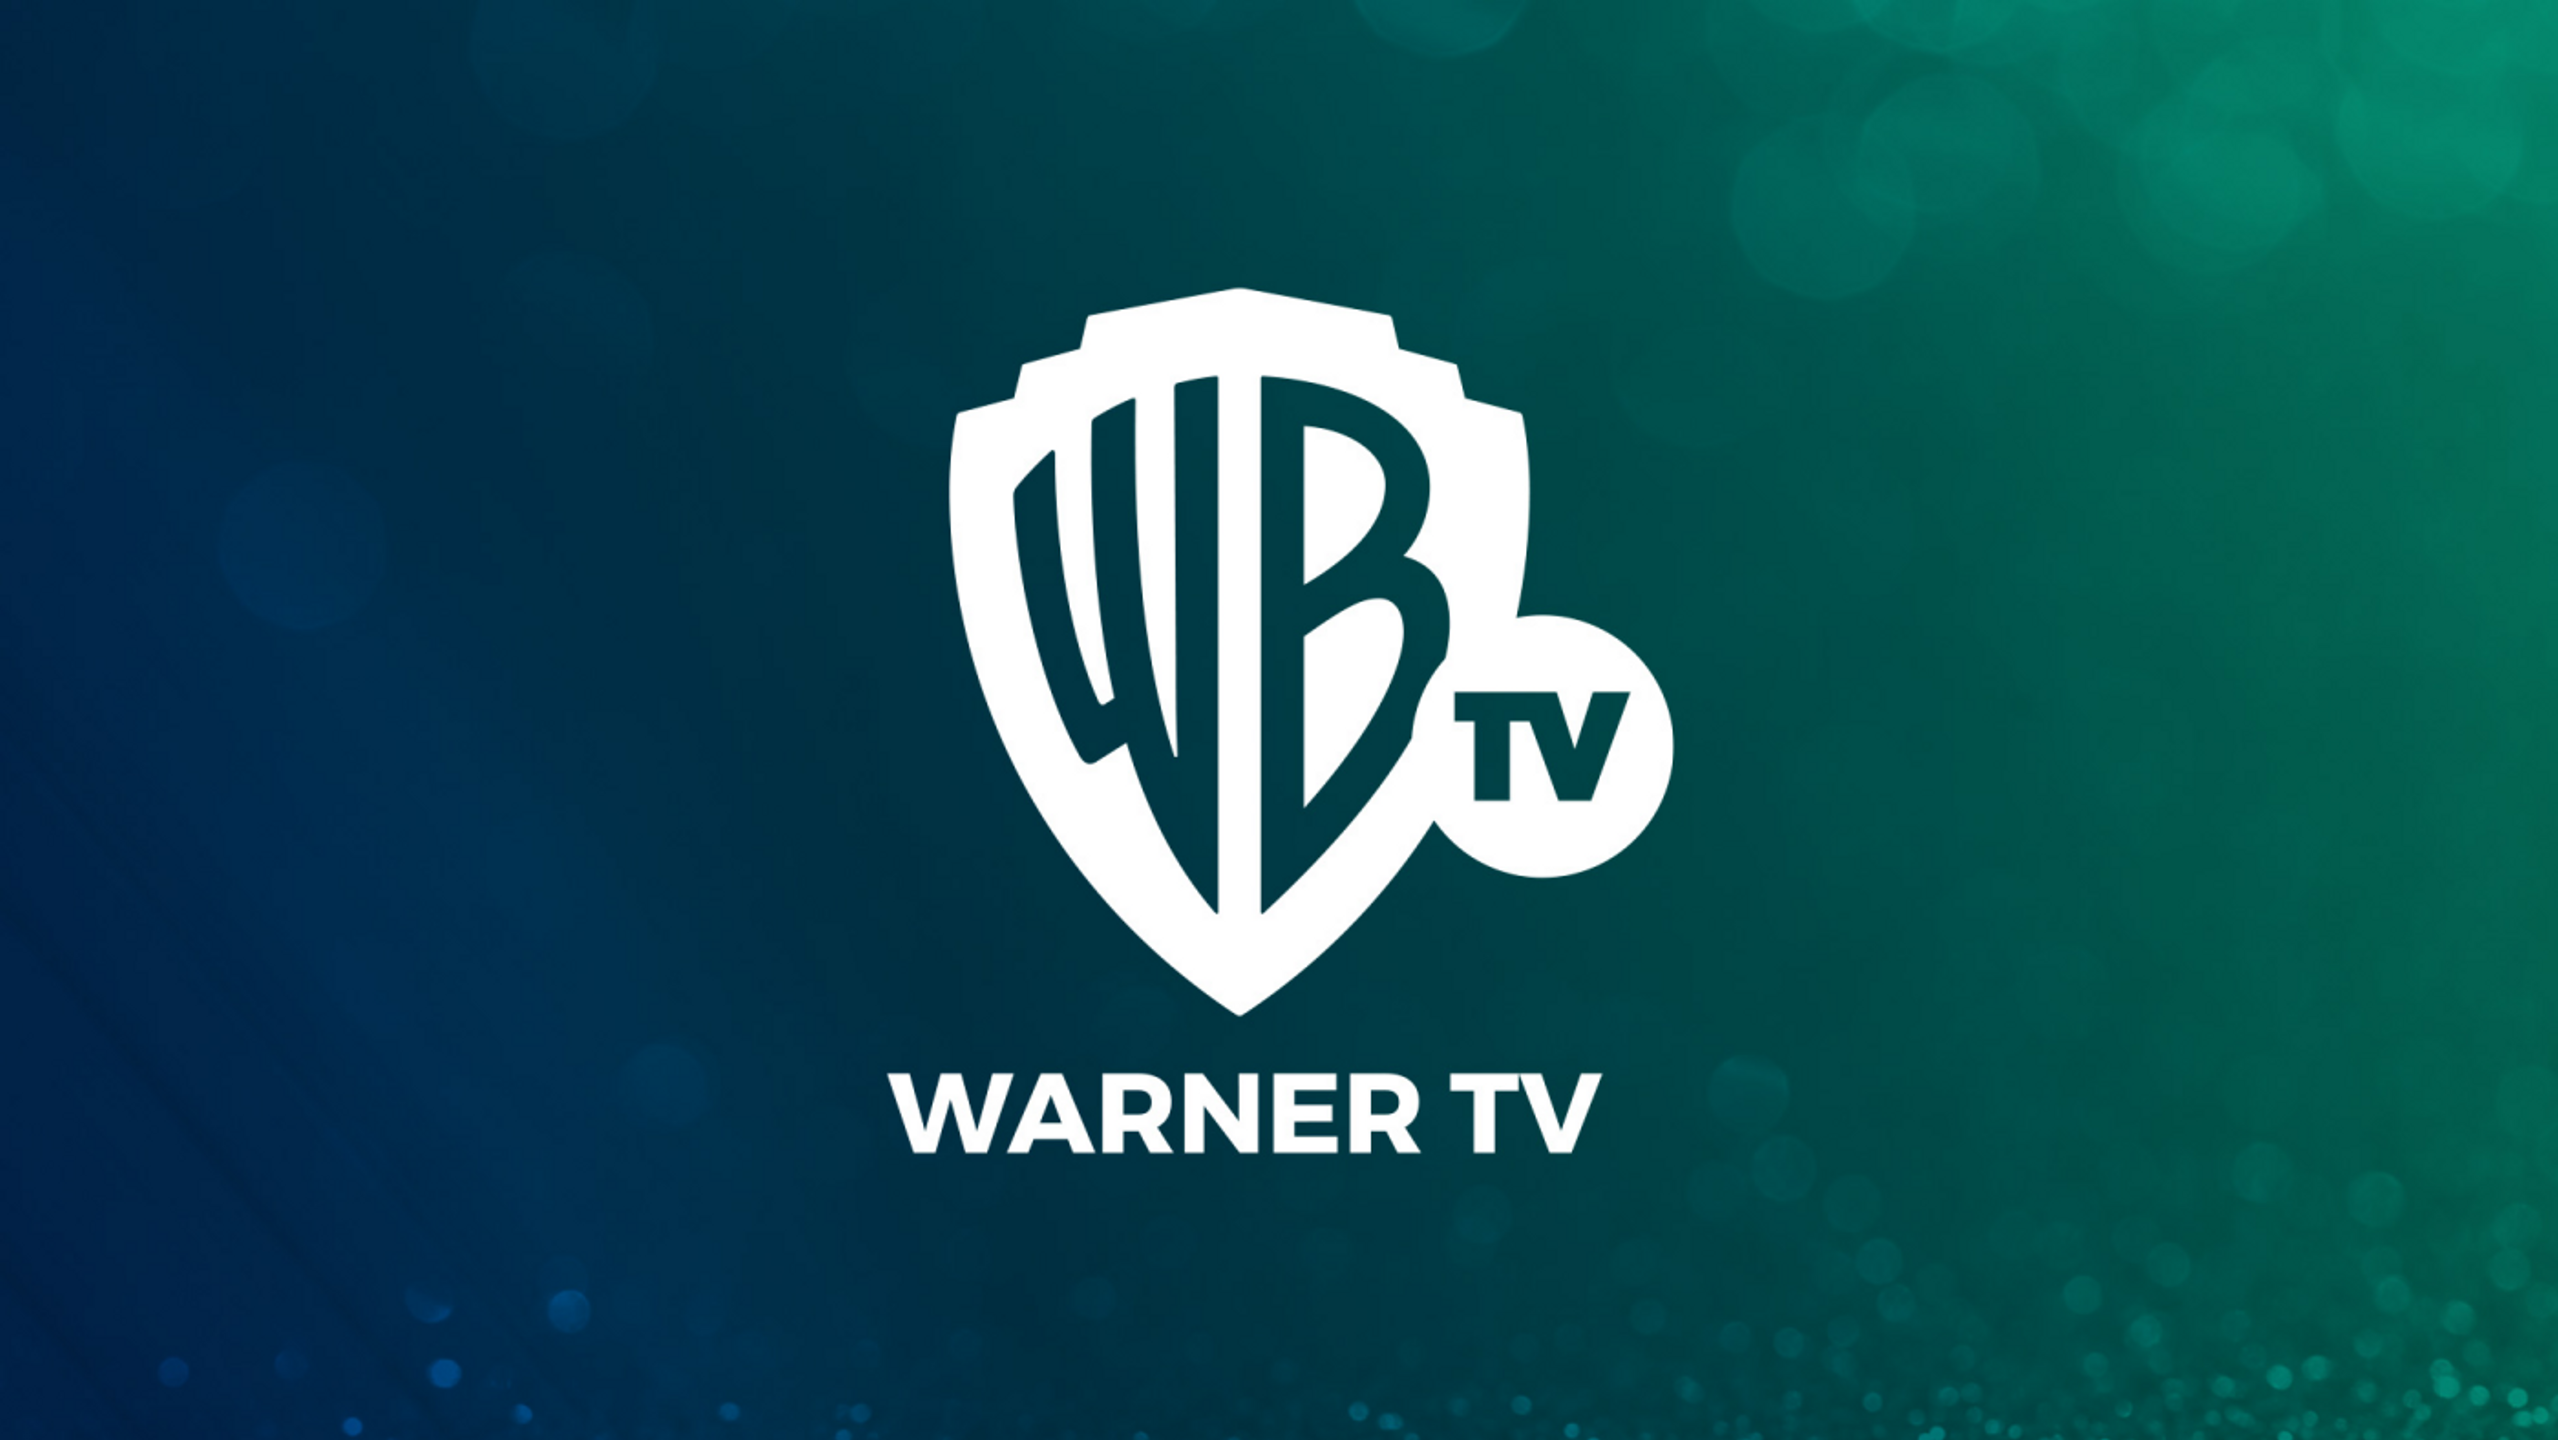 Logo del nuevo canal Warner TV que sustituye a TNT.